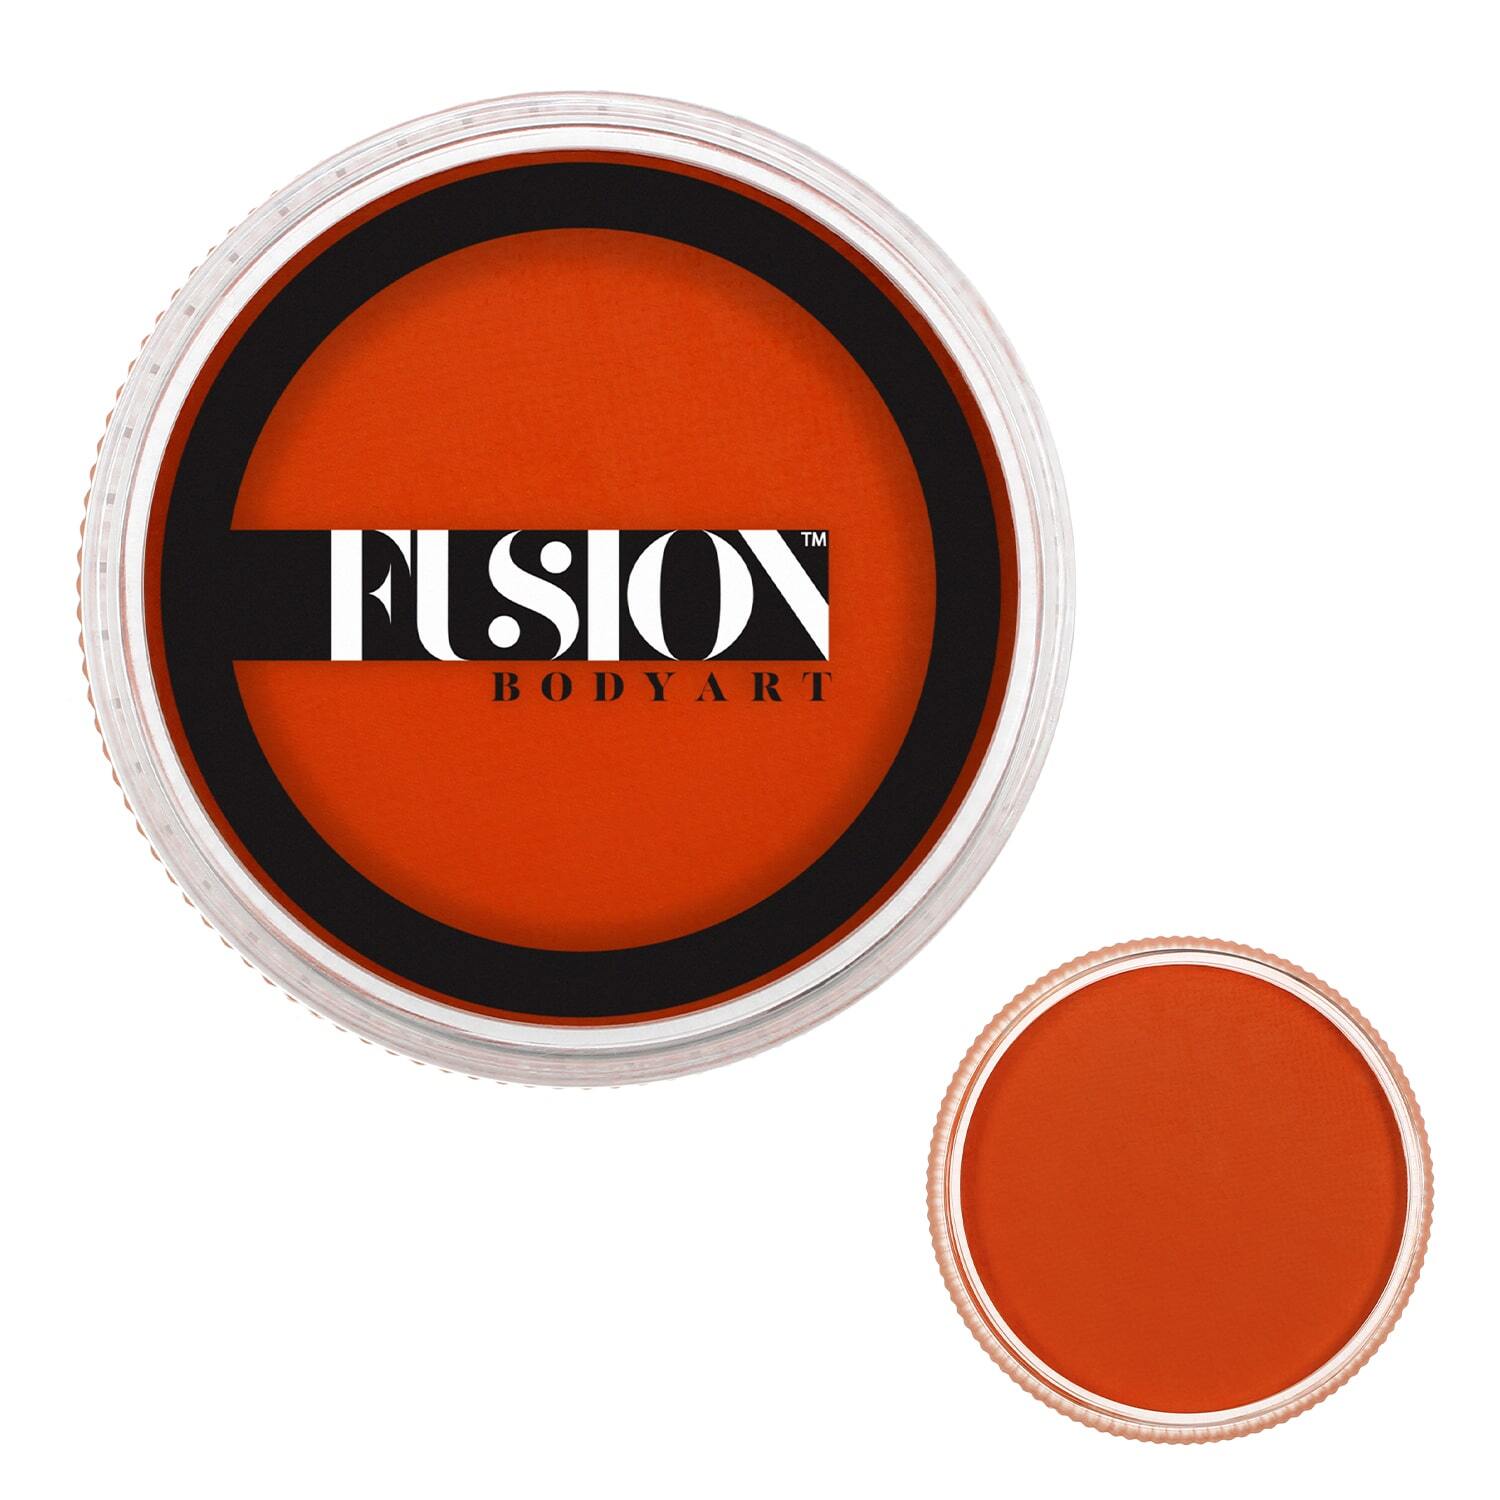 Fusion Body Art Face Paints – Prime Orange Zest | 32g